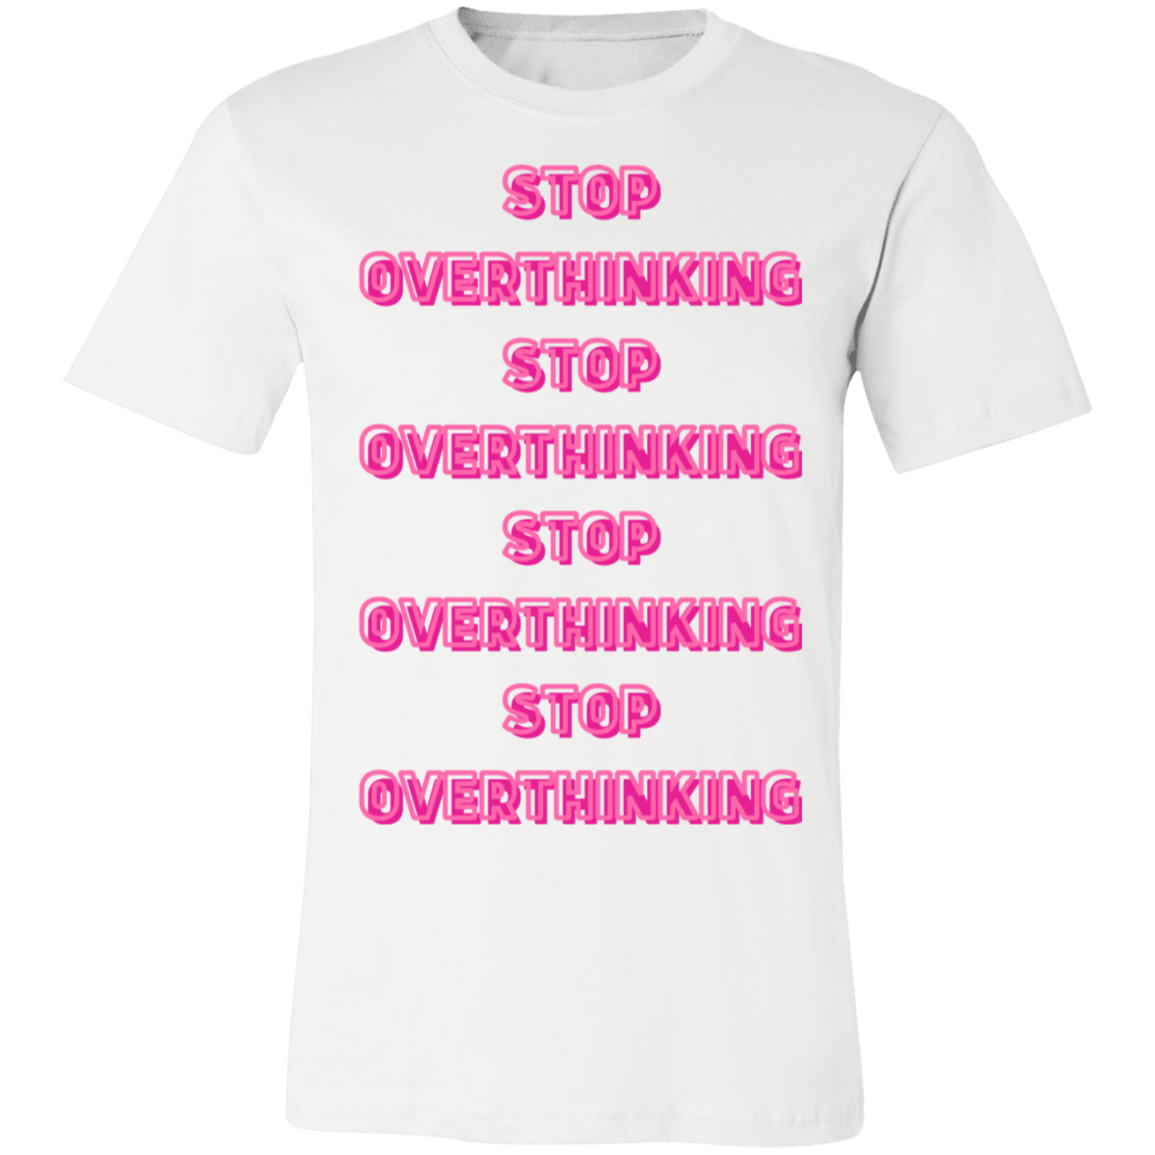 STOP OVERTHINKING TEE